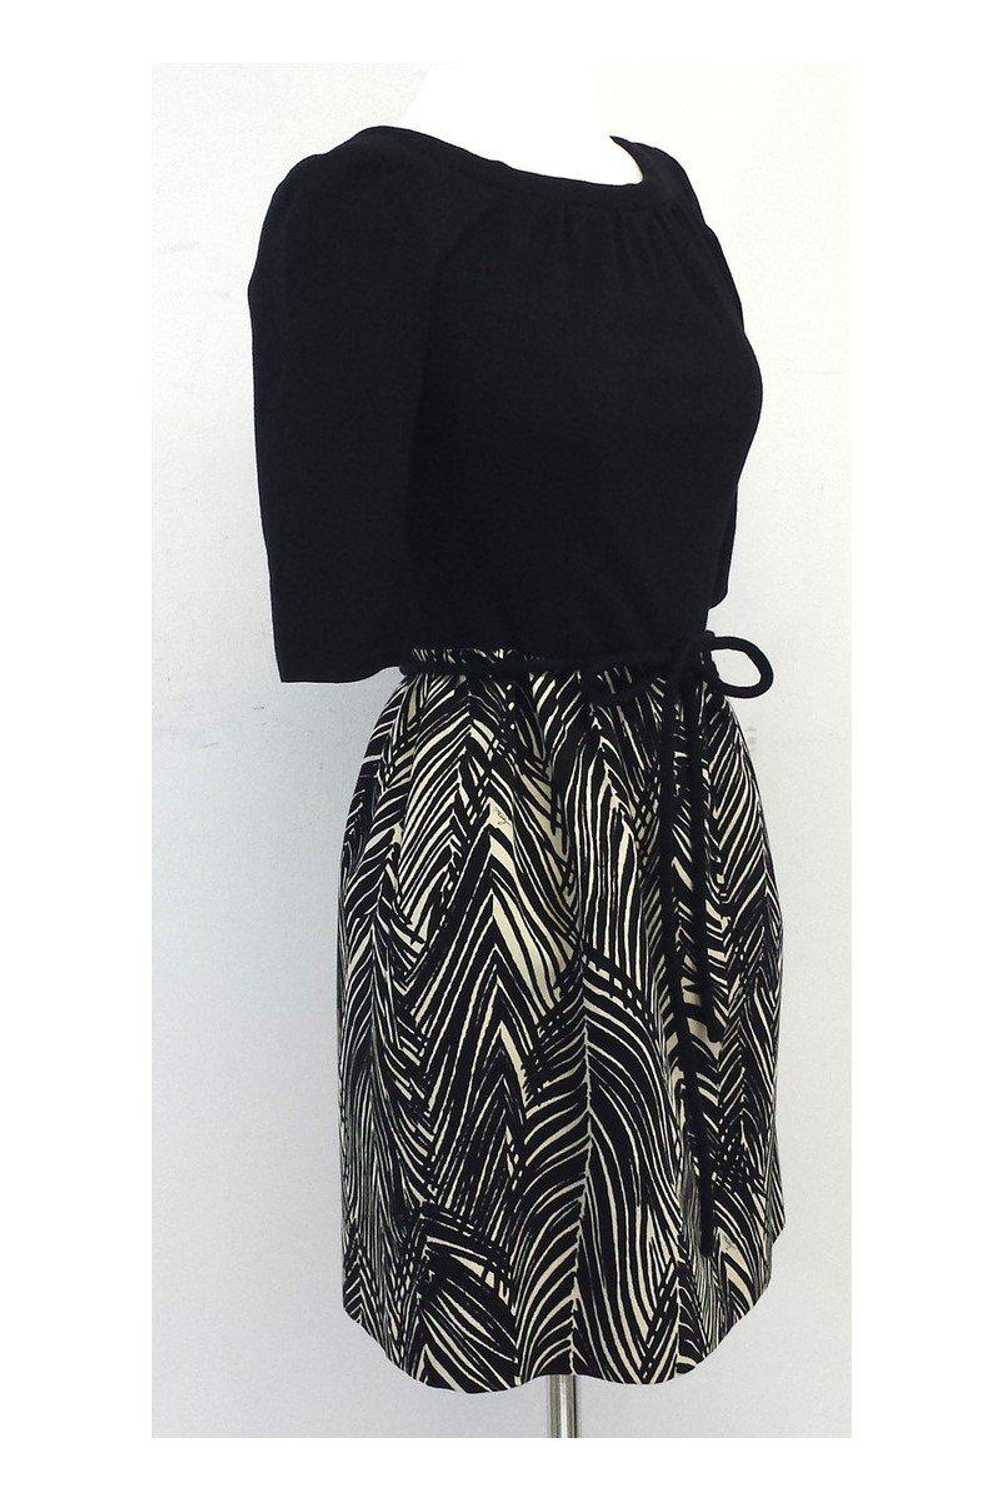 Milly - Black & Tan Print Cotton Dress Sz 2 - image 2